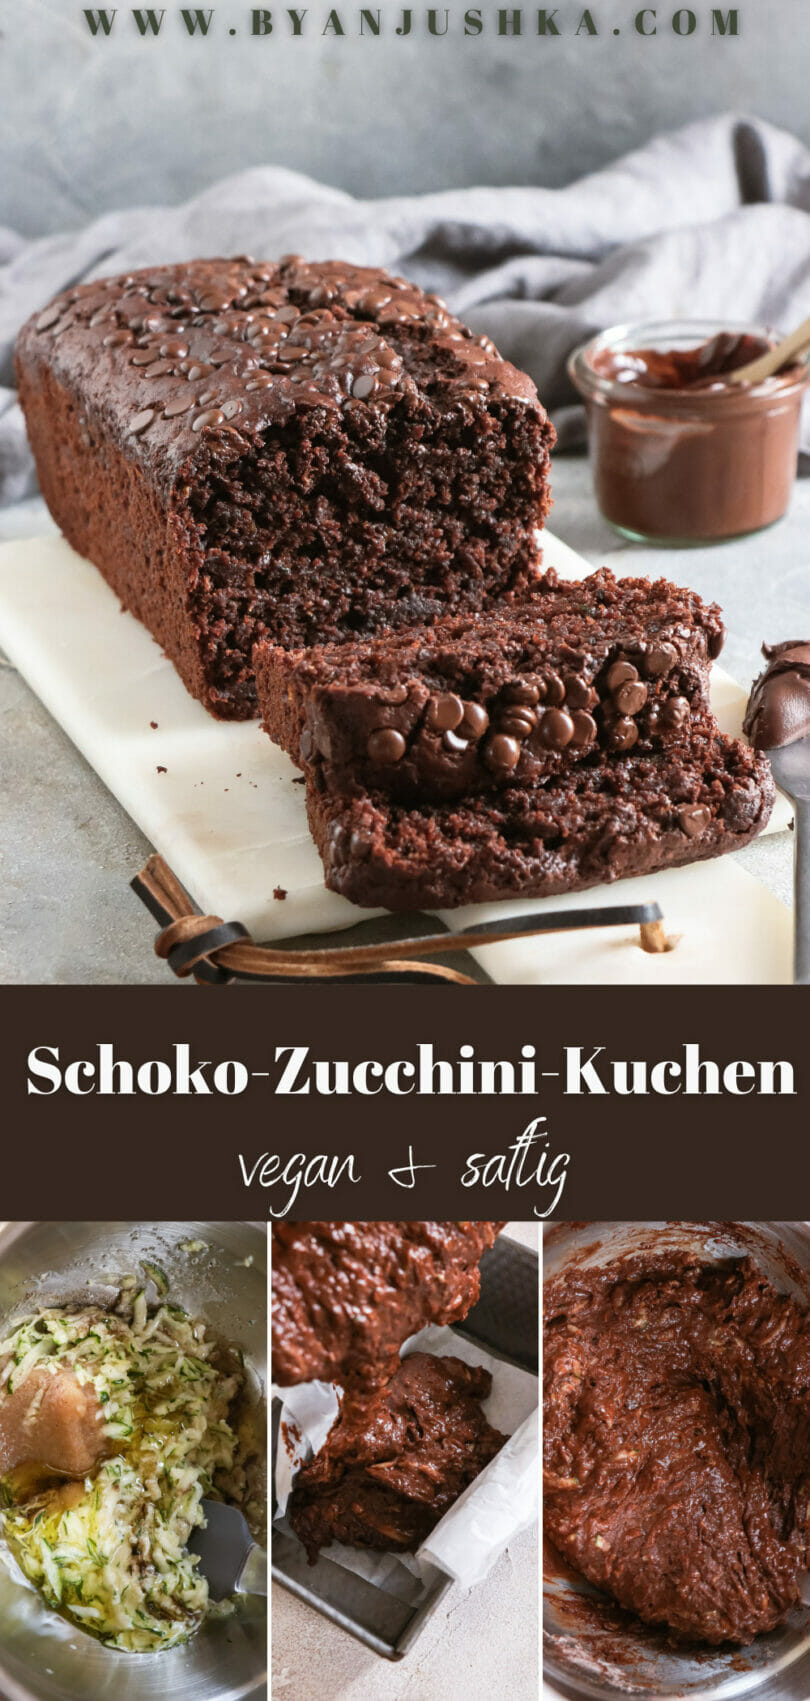 Kollage für das Rezept "Schoko-Zucchini-Kuchen - vegan & saftig" zum Teilen auf Pinterest